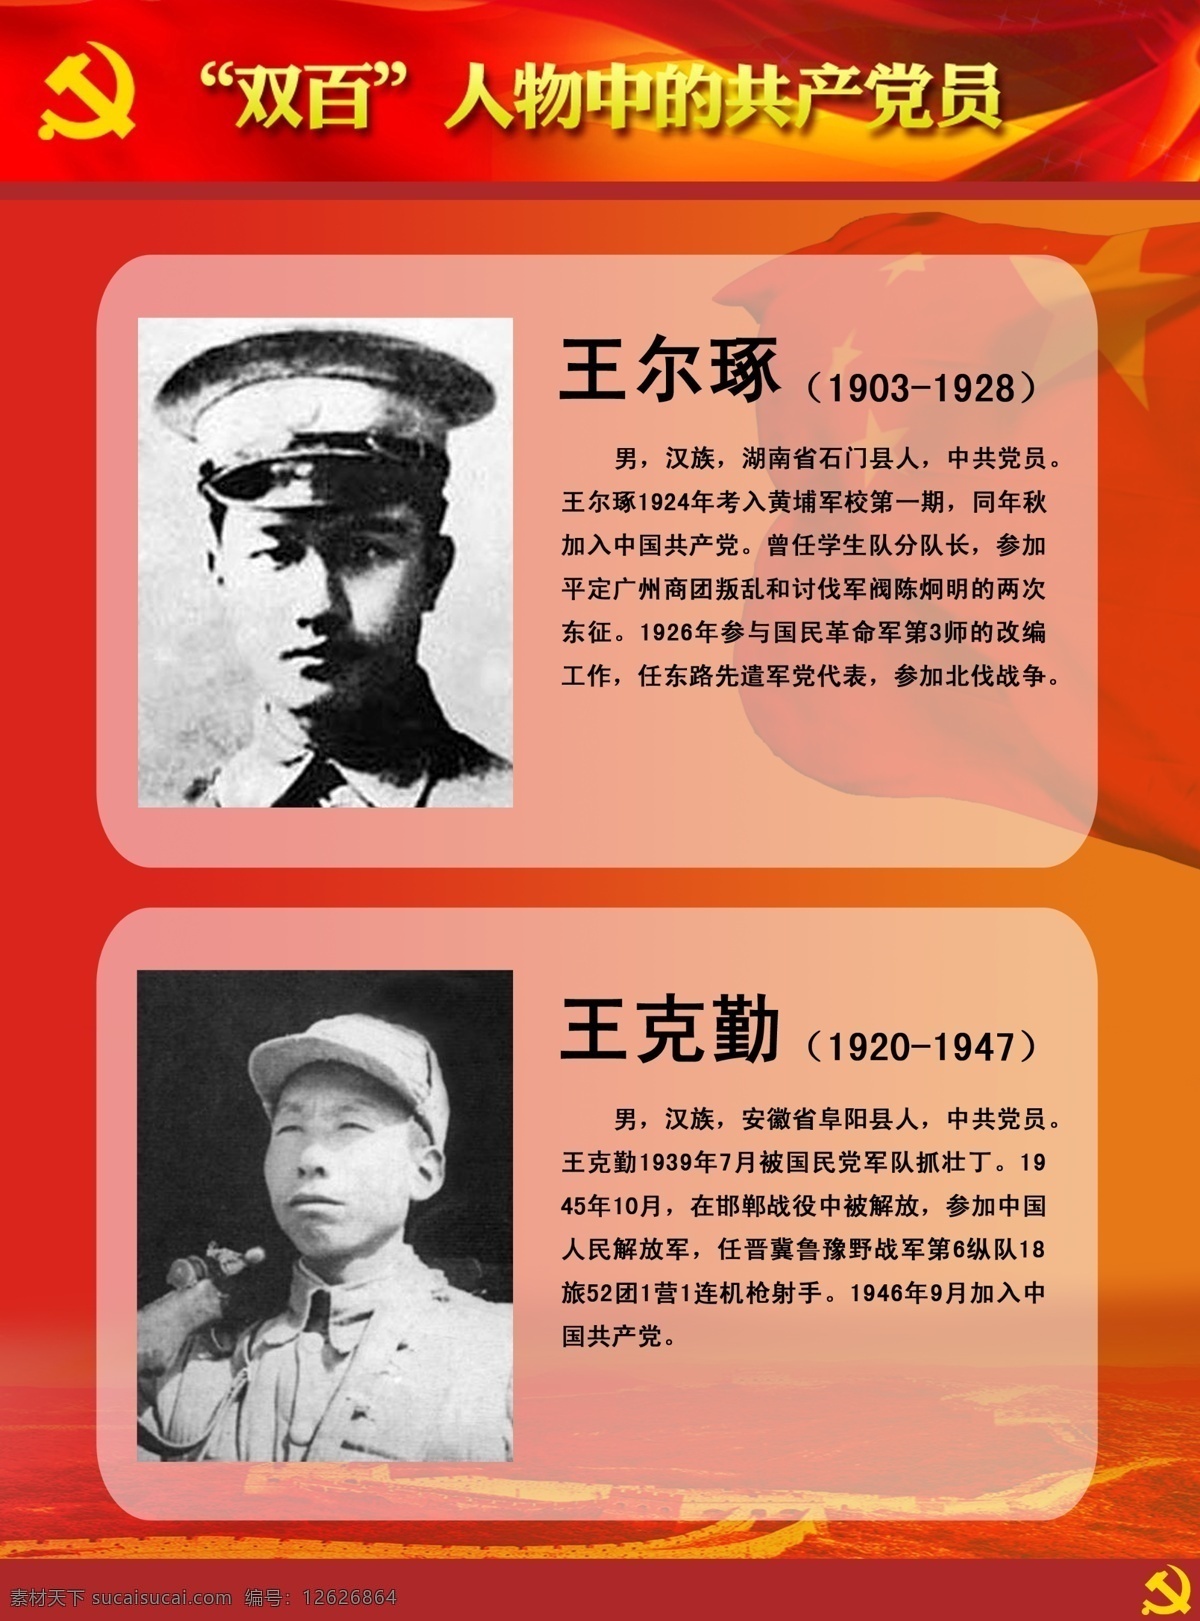 双百人物展板 双百 人物 中 共产党员 王尔琢 王克勤 英雄人物 牺牲 英雄 展板模板 广告设计模板 源文件